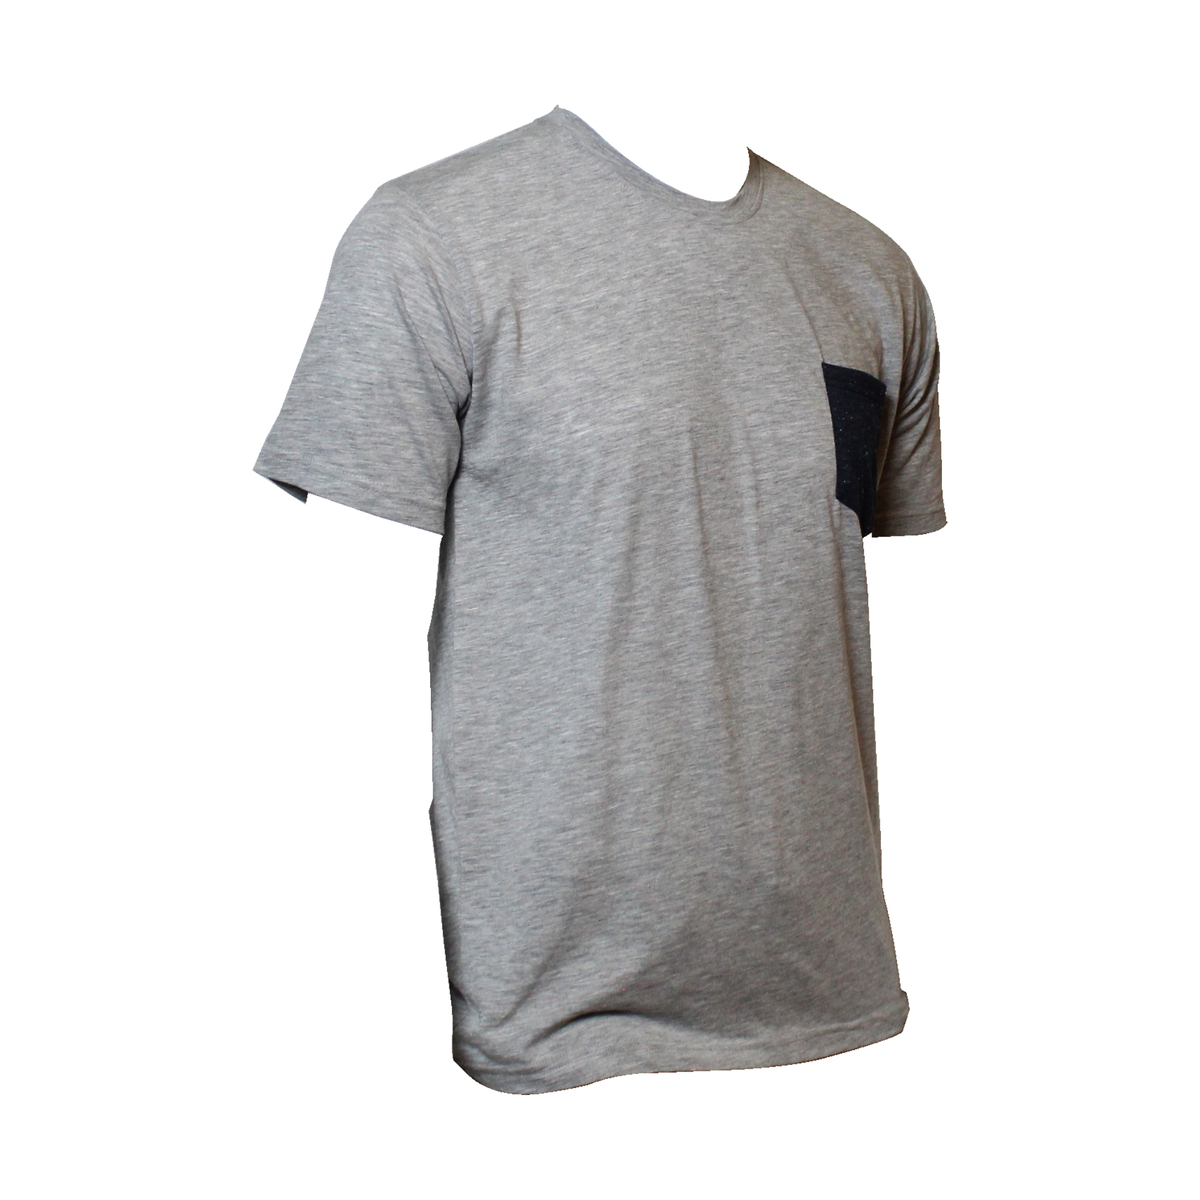 Marco Donateli Mens T-Shirt Promo Big Size